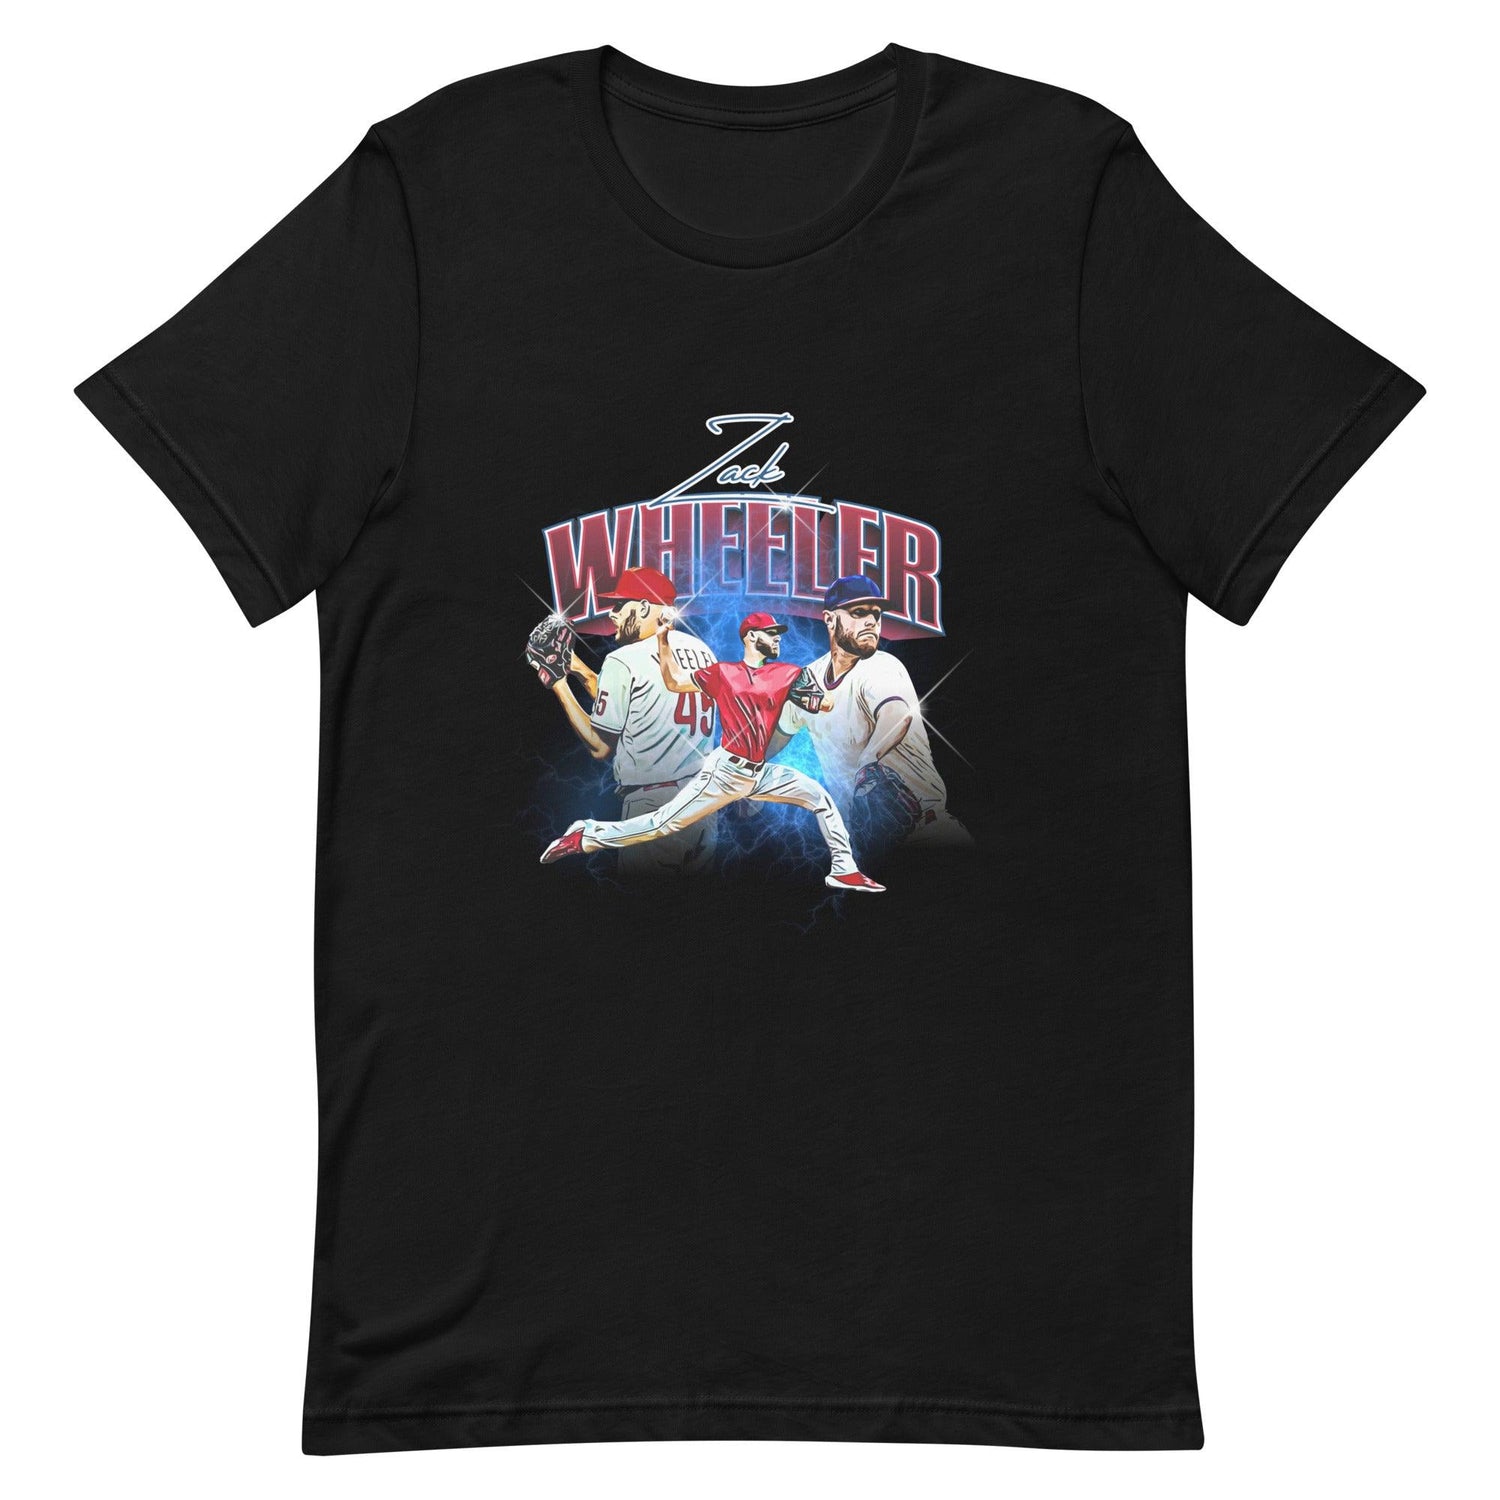 Zack Wheeler “Essential” t-shirt - Fan Arch